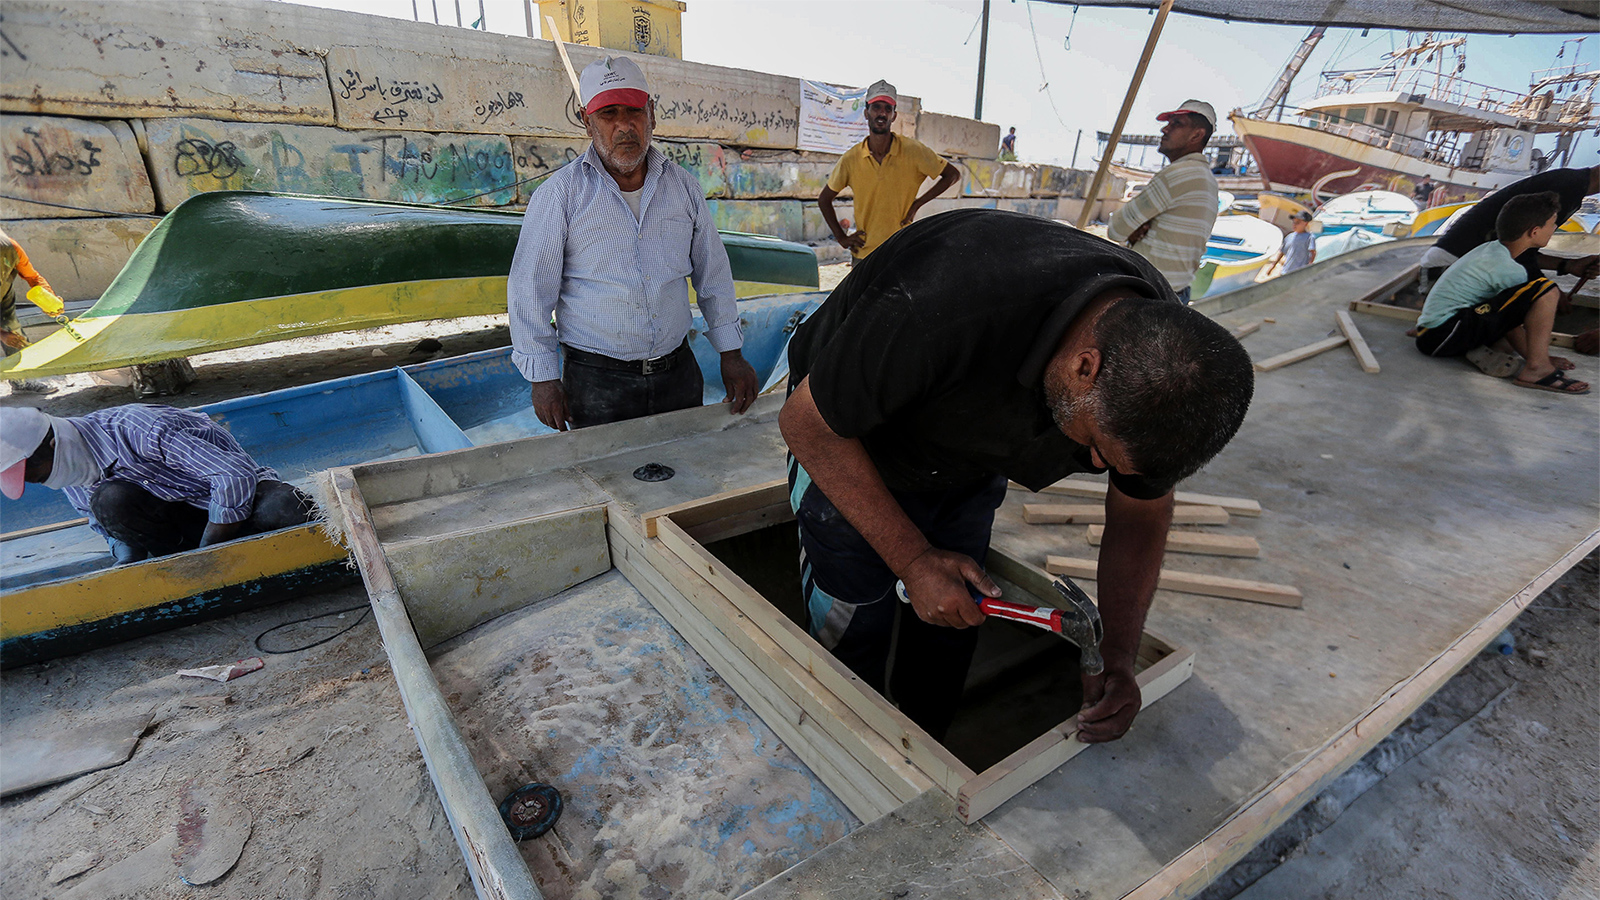 ‪يشكو آخر صانع قوارب في القطاع من عدم دعم المؤسسات المعنية لحرفته‬ (الجزيرة)